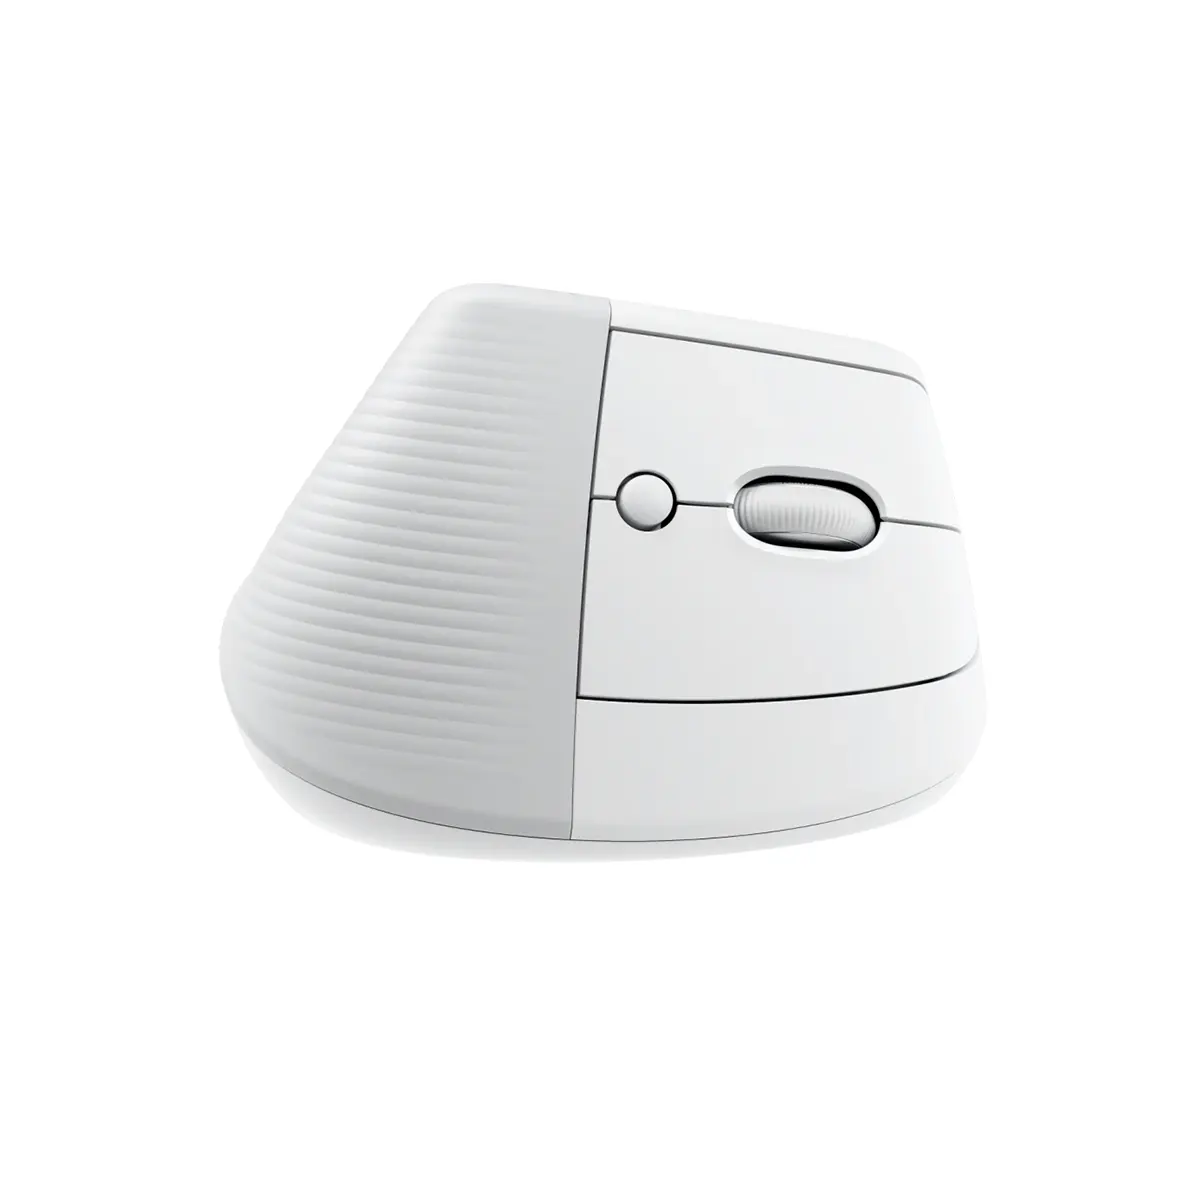 موس عمودی بی سیم لاجیتک مدل Logitech Lift Vertical Ergonomic Wireless Mouse رنگ سفید (2)